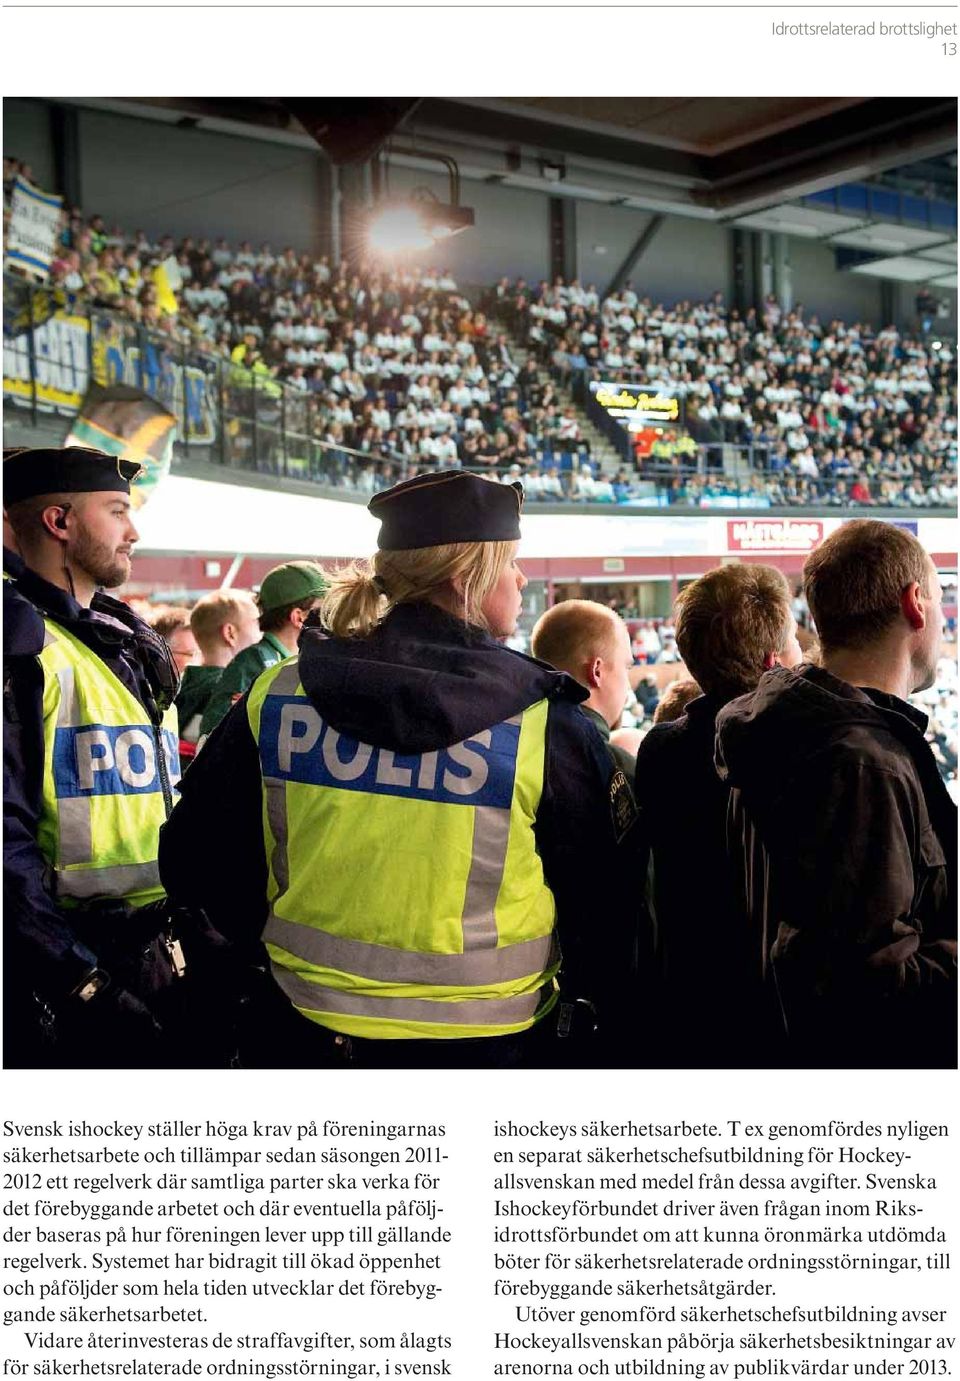 Vidare återinvesteras de straffavgifter, som ålagts för säkerhetsrelaterade ordningsstörningar, i svensk ishockeys säkerhetsarbete.